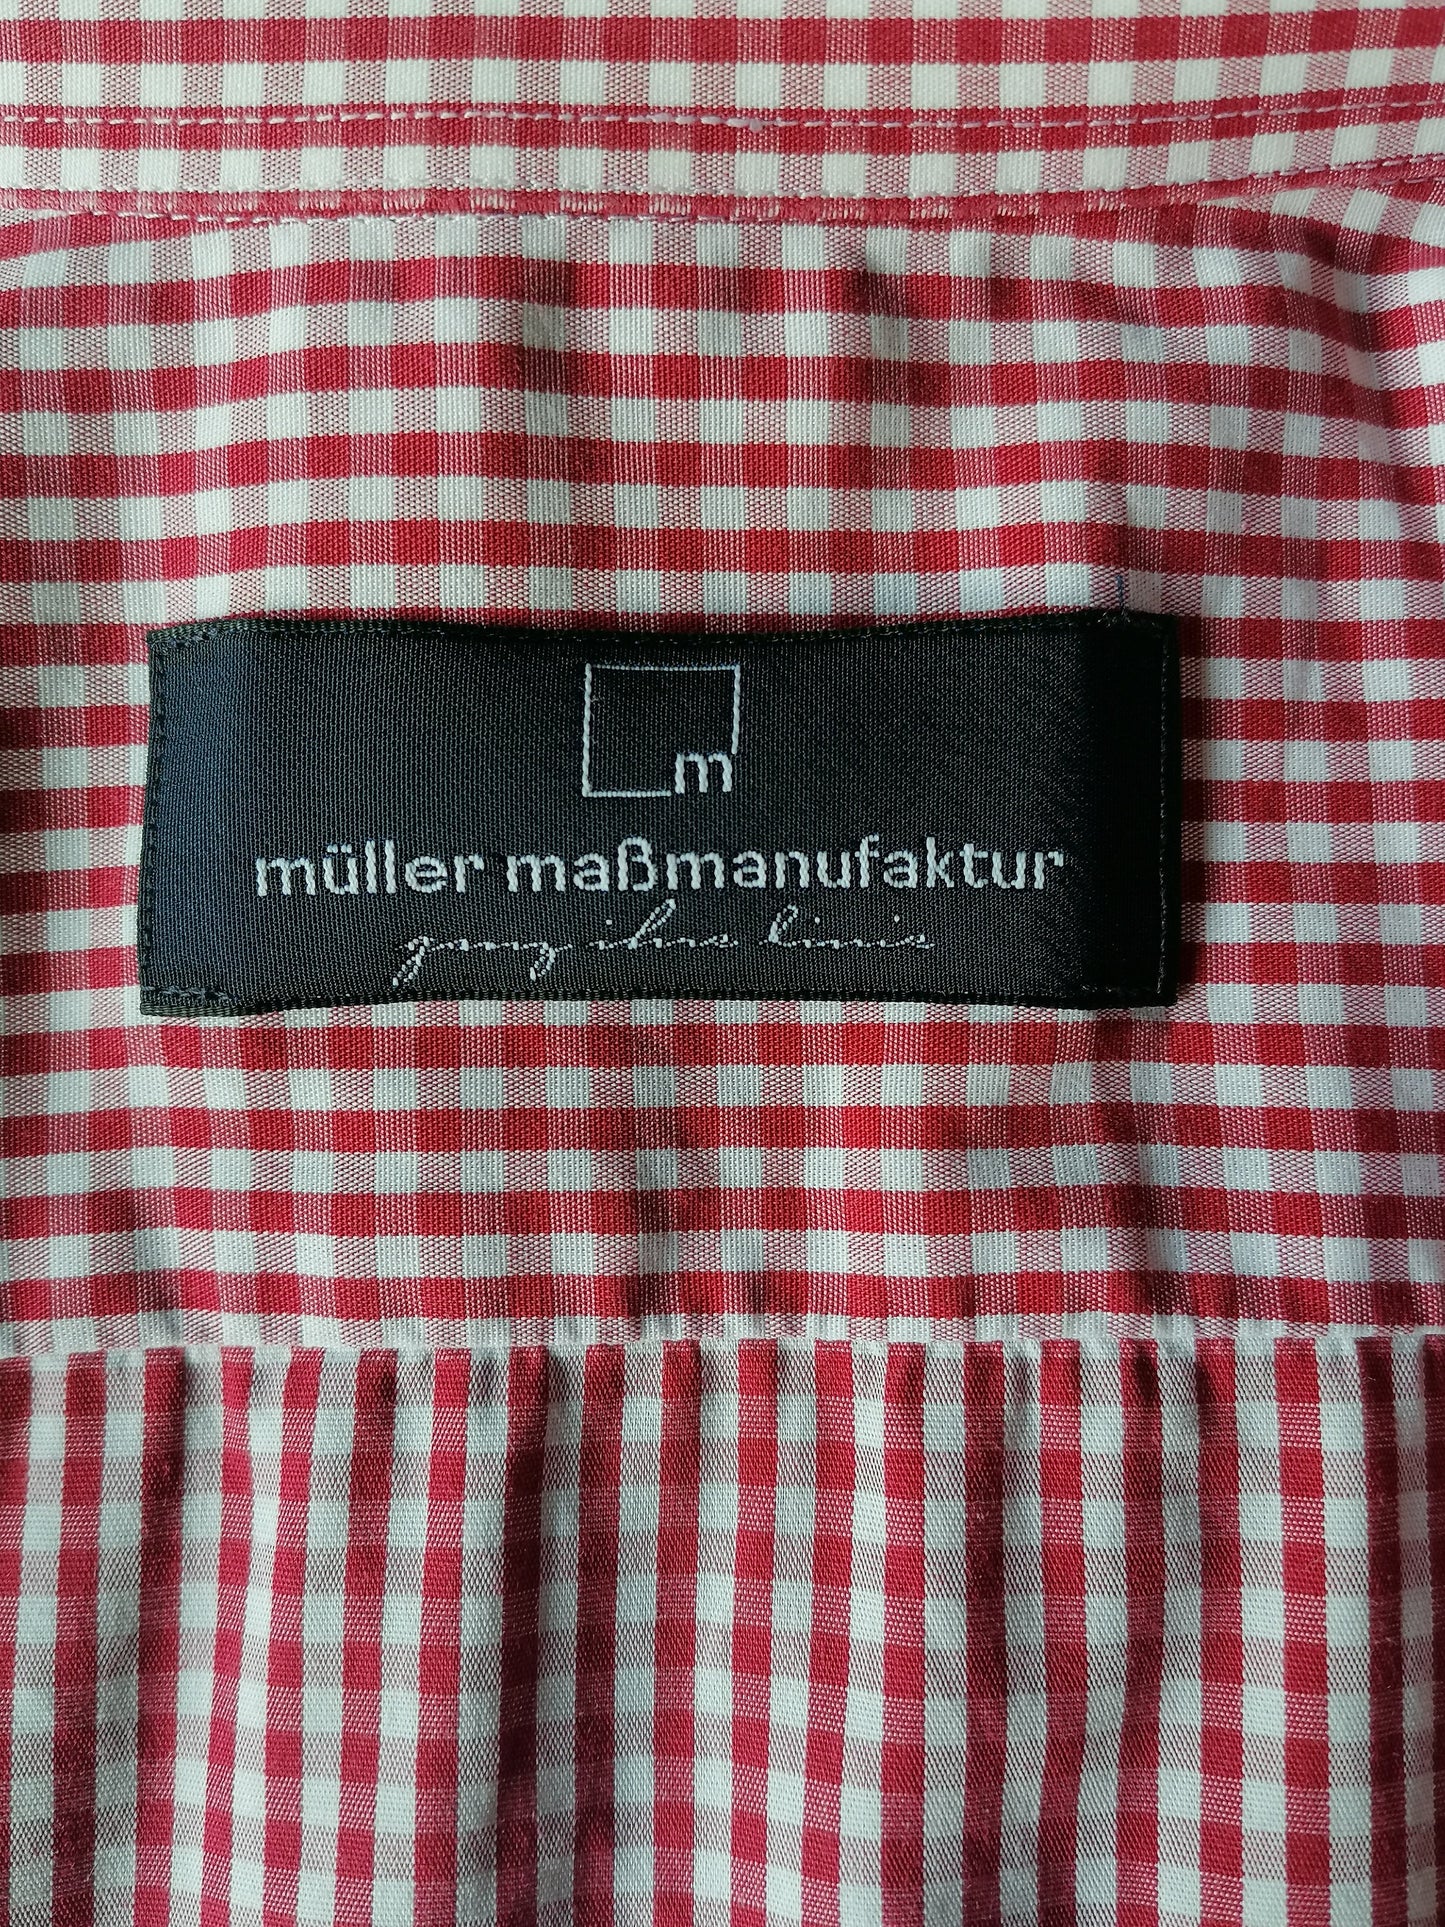 Müller Maßmanufaktur -Hemd. Rotweiß kariert. Größe xl. "FJ"